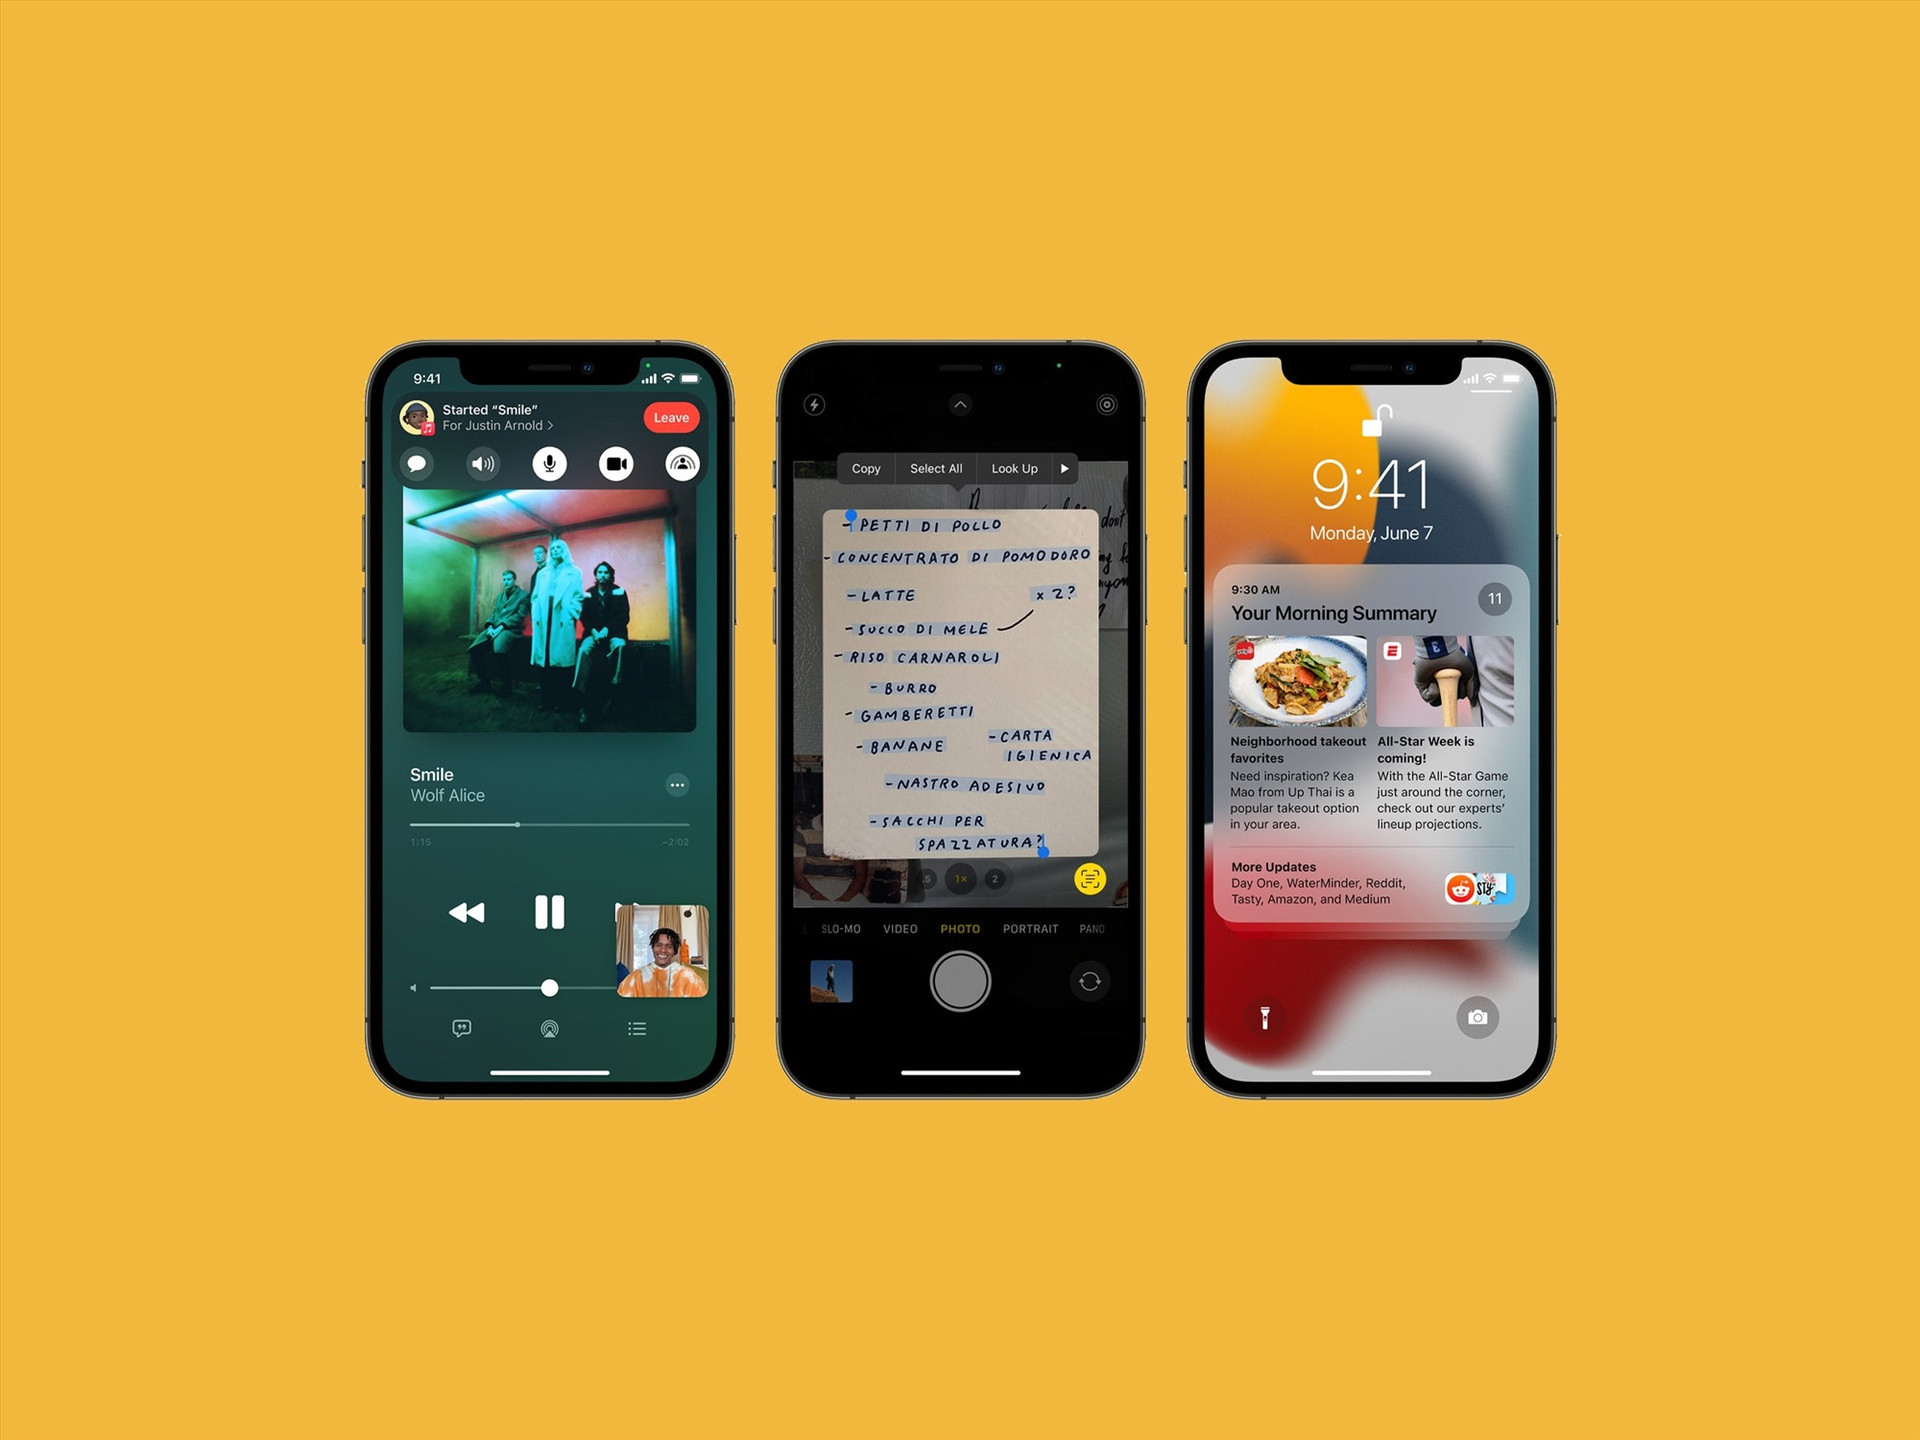 SharePlay cho phép chia sẻ màn hình trong khi gọi, giúp người dùng dễ dàng phát trực tiếp cho bạn bè và người thân. Ảnh: Wired